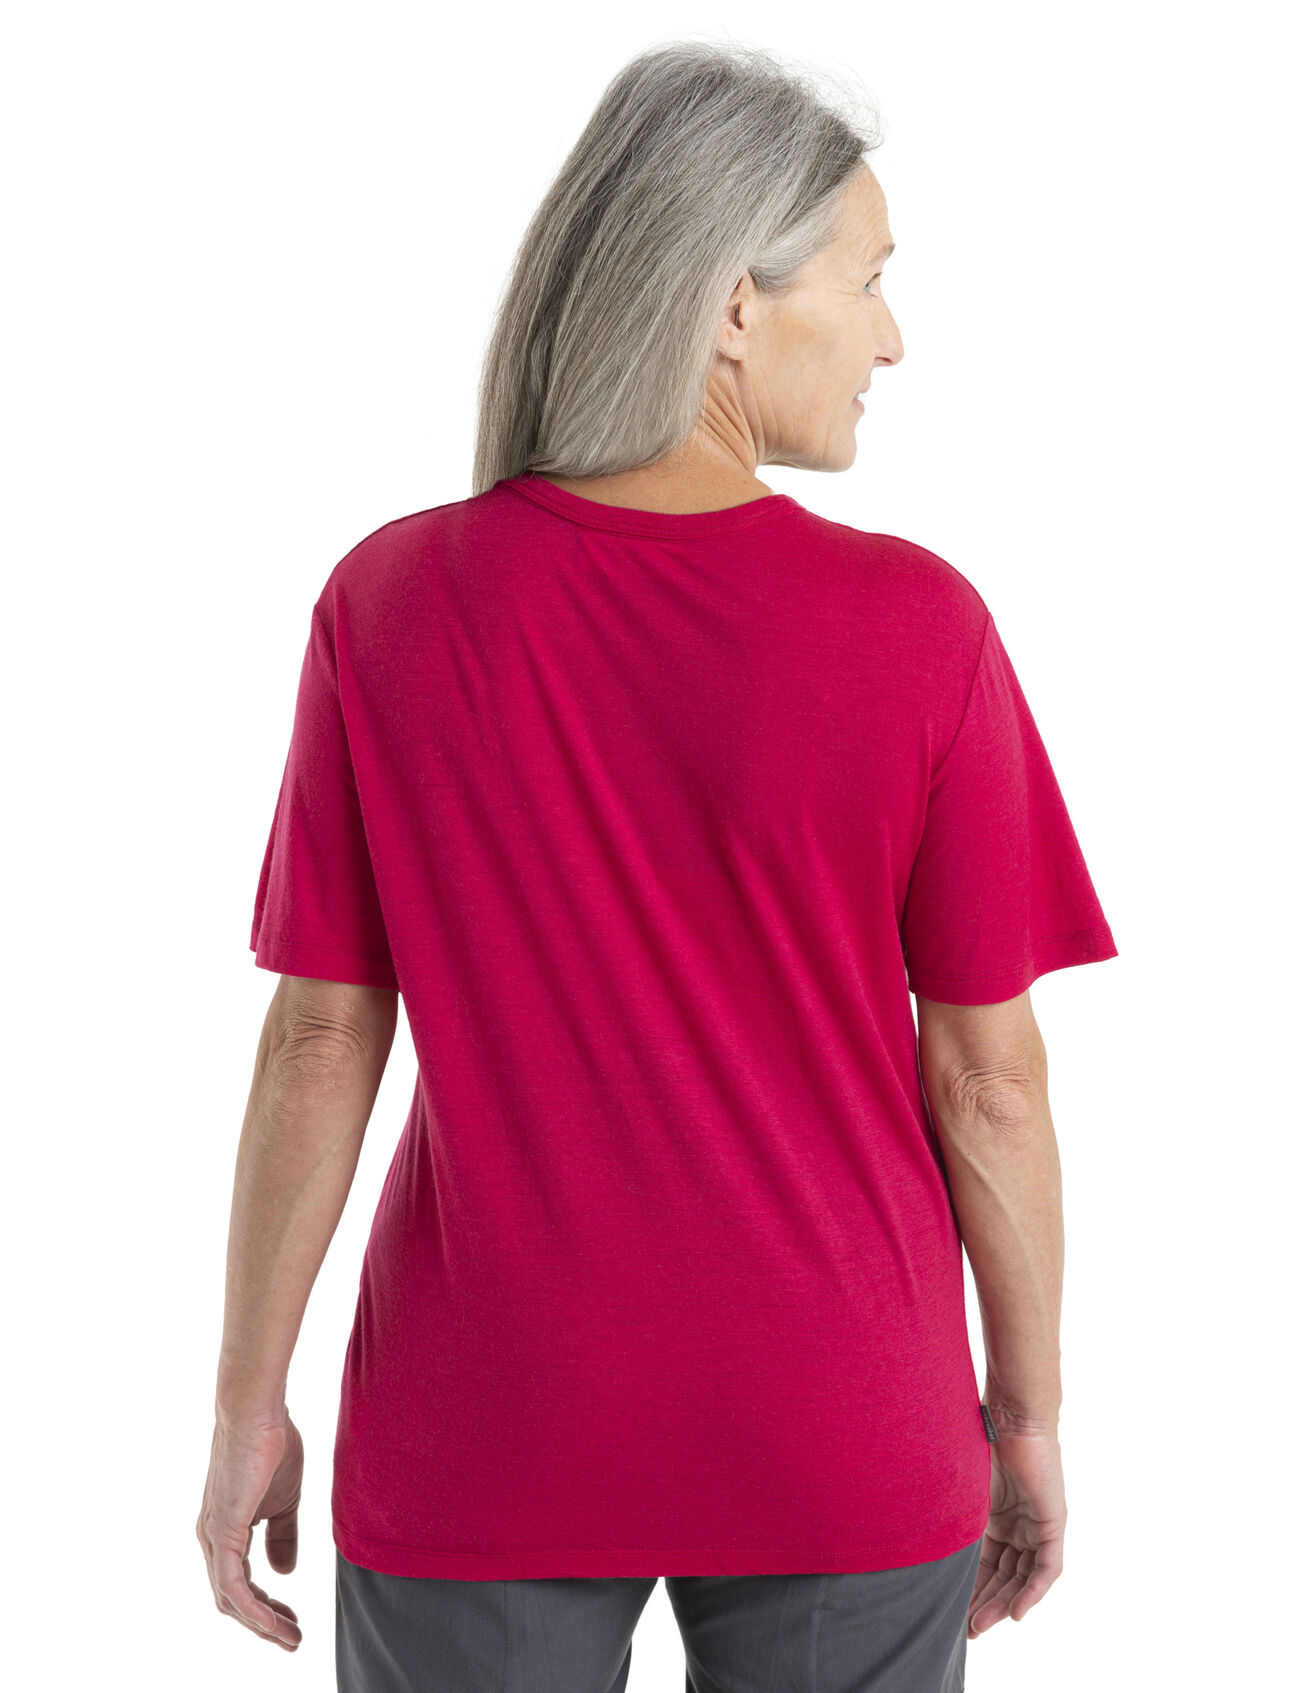 Ultralight Waist-Length T-Shirt, Women's Short Sleeve Shirts & Tee's